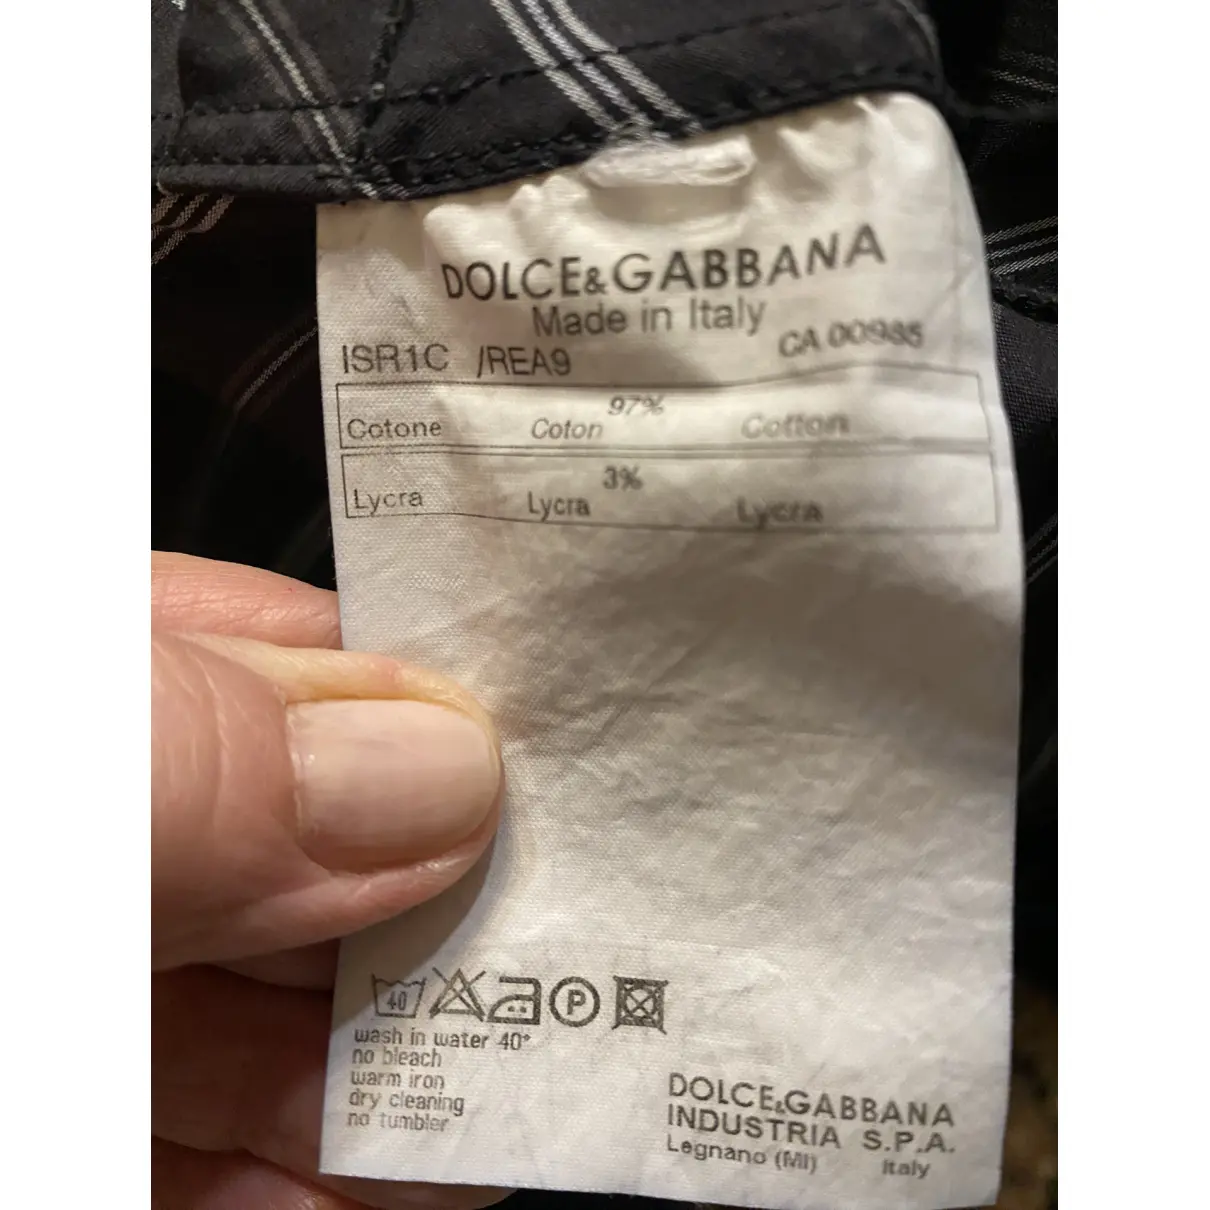 Knitwear Dolce & Gabbana